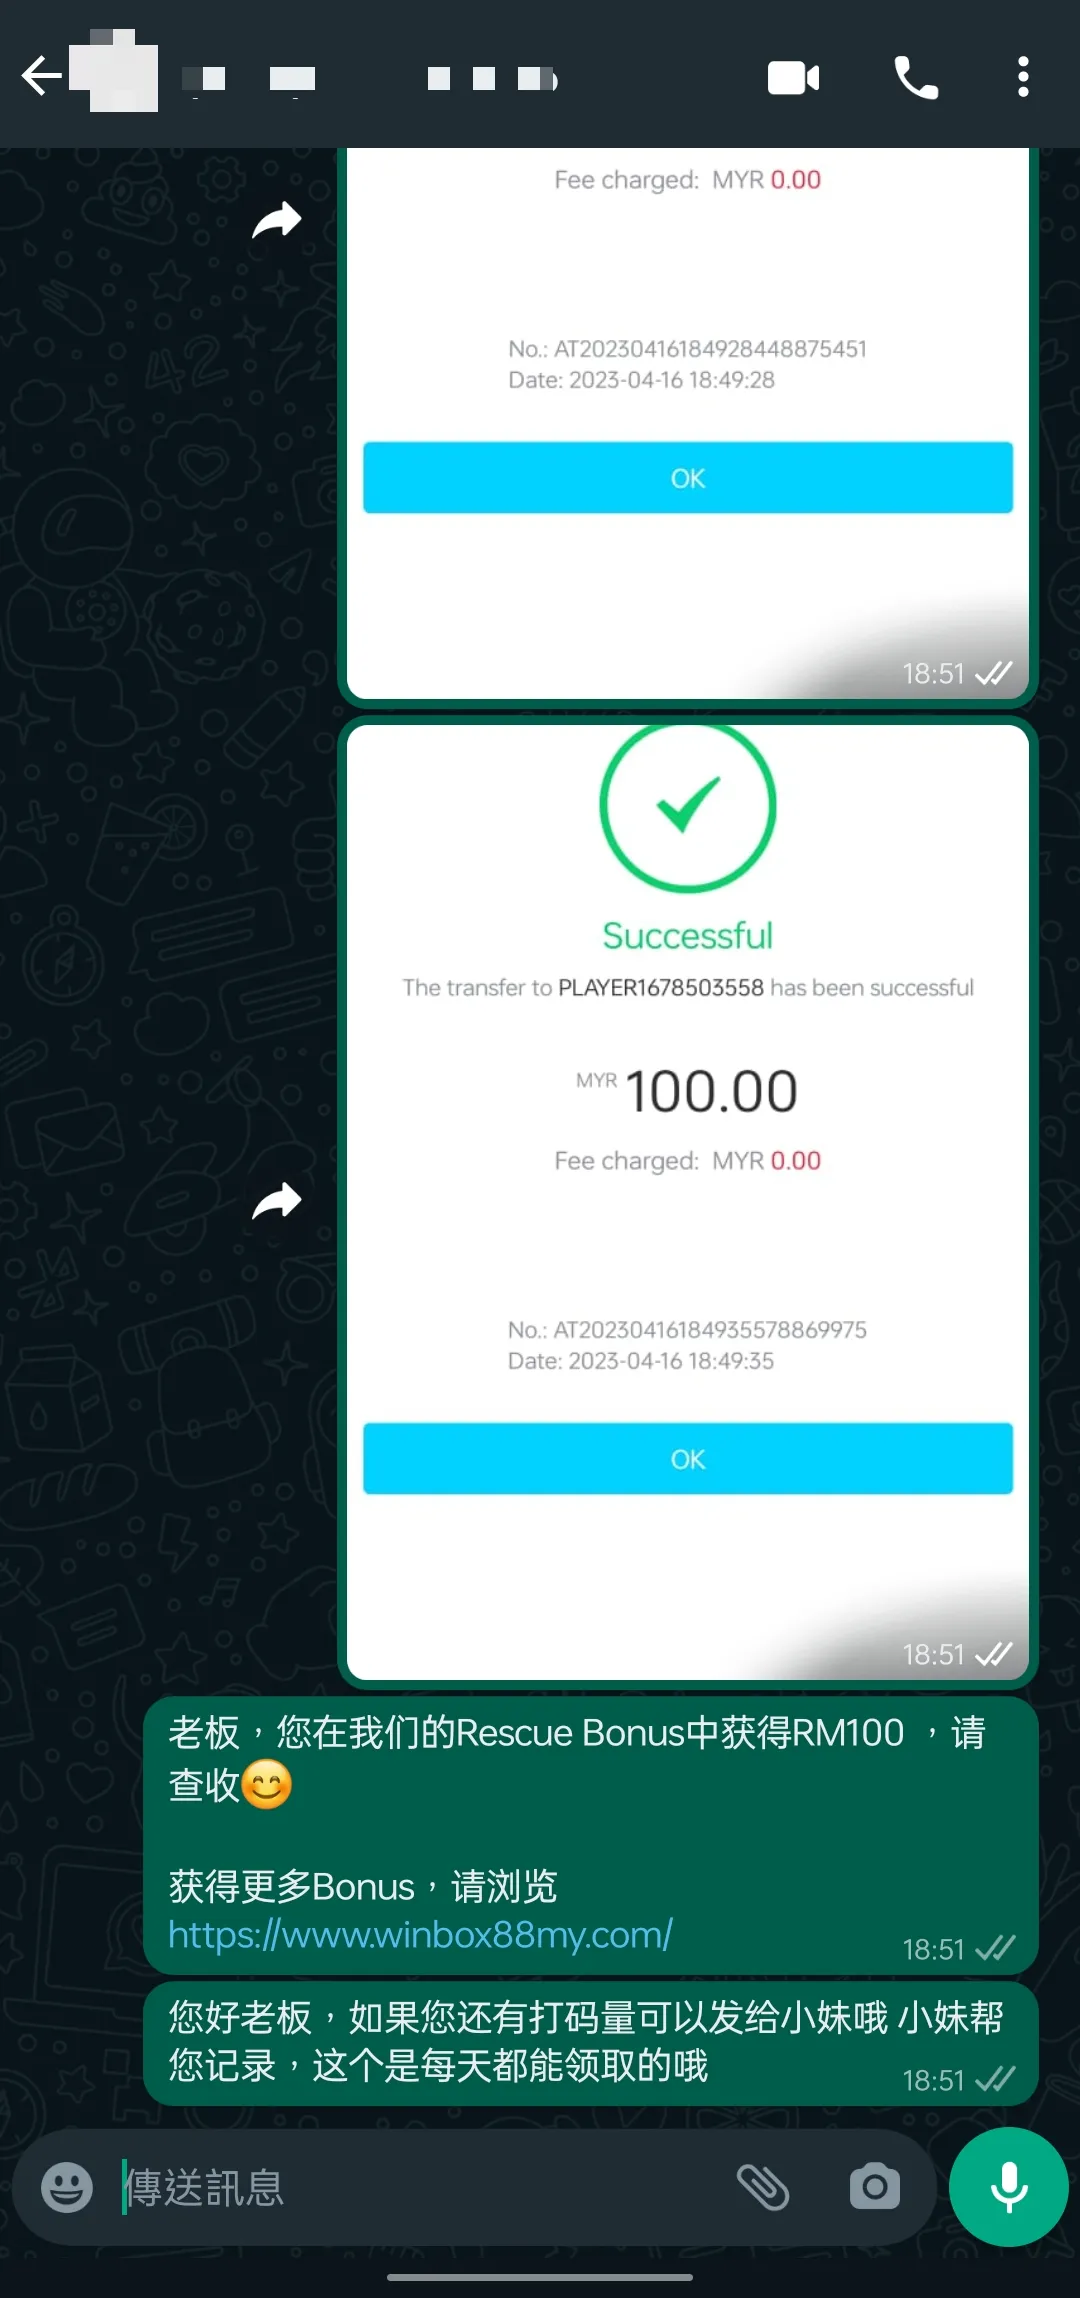 winbox rescue bonus past winner screenshot 7